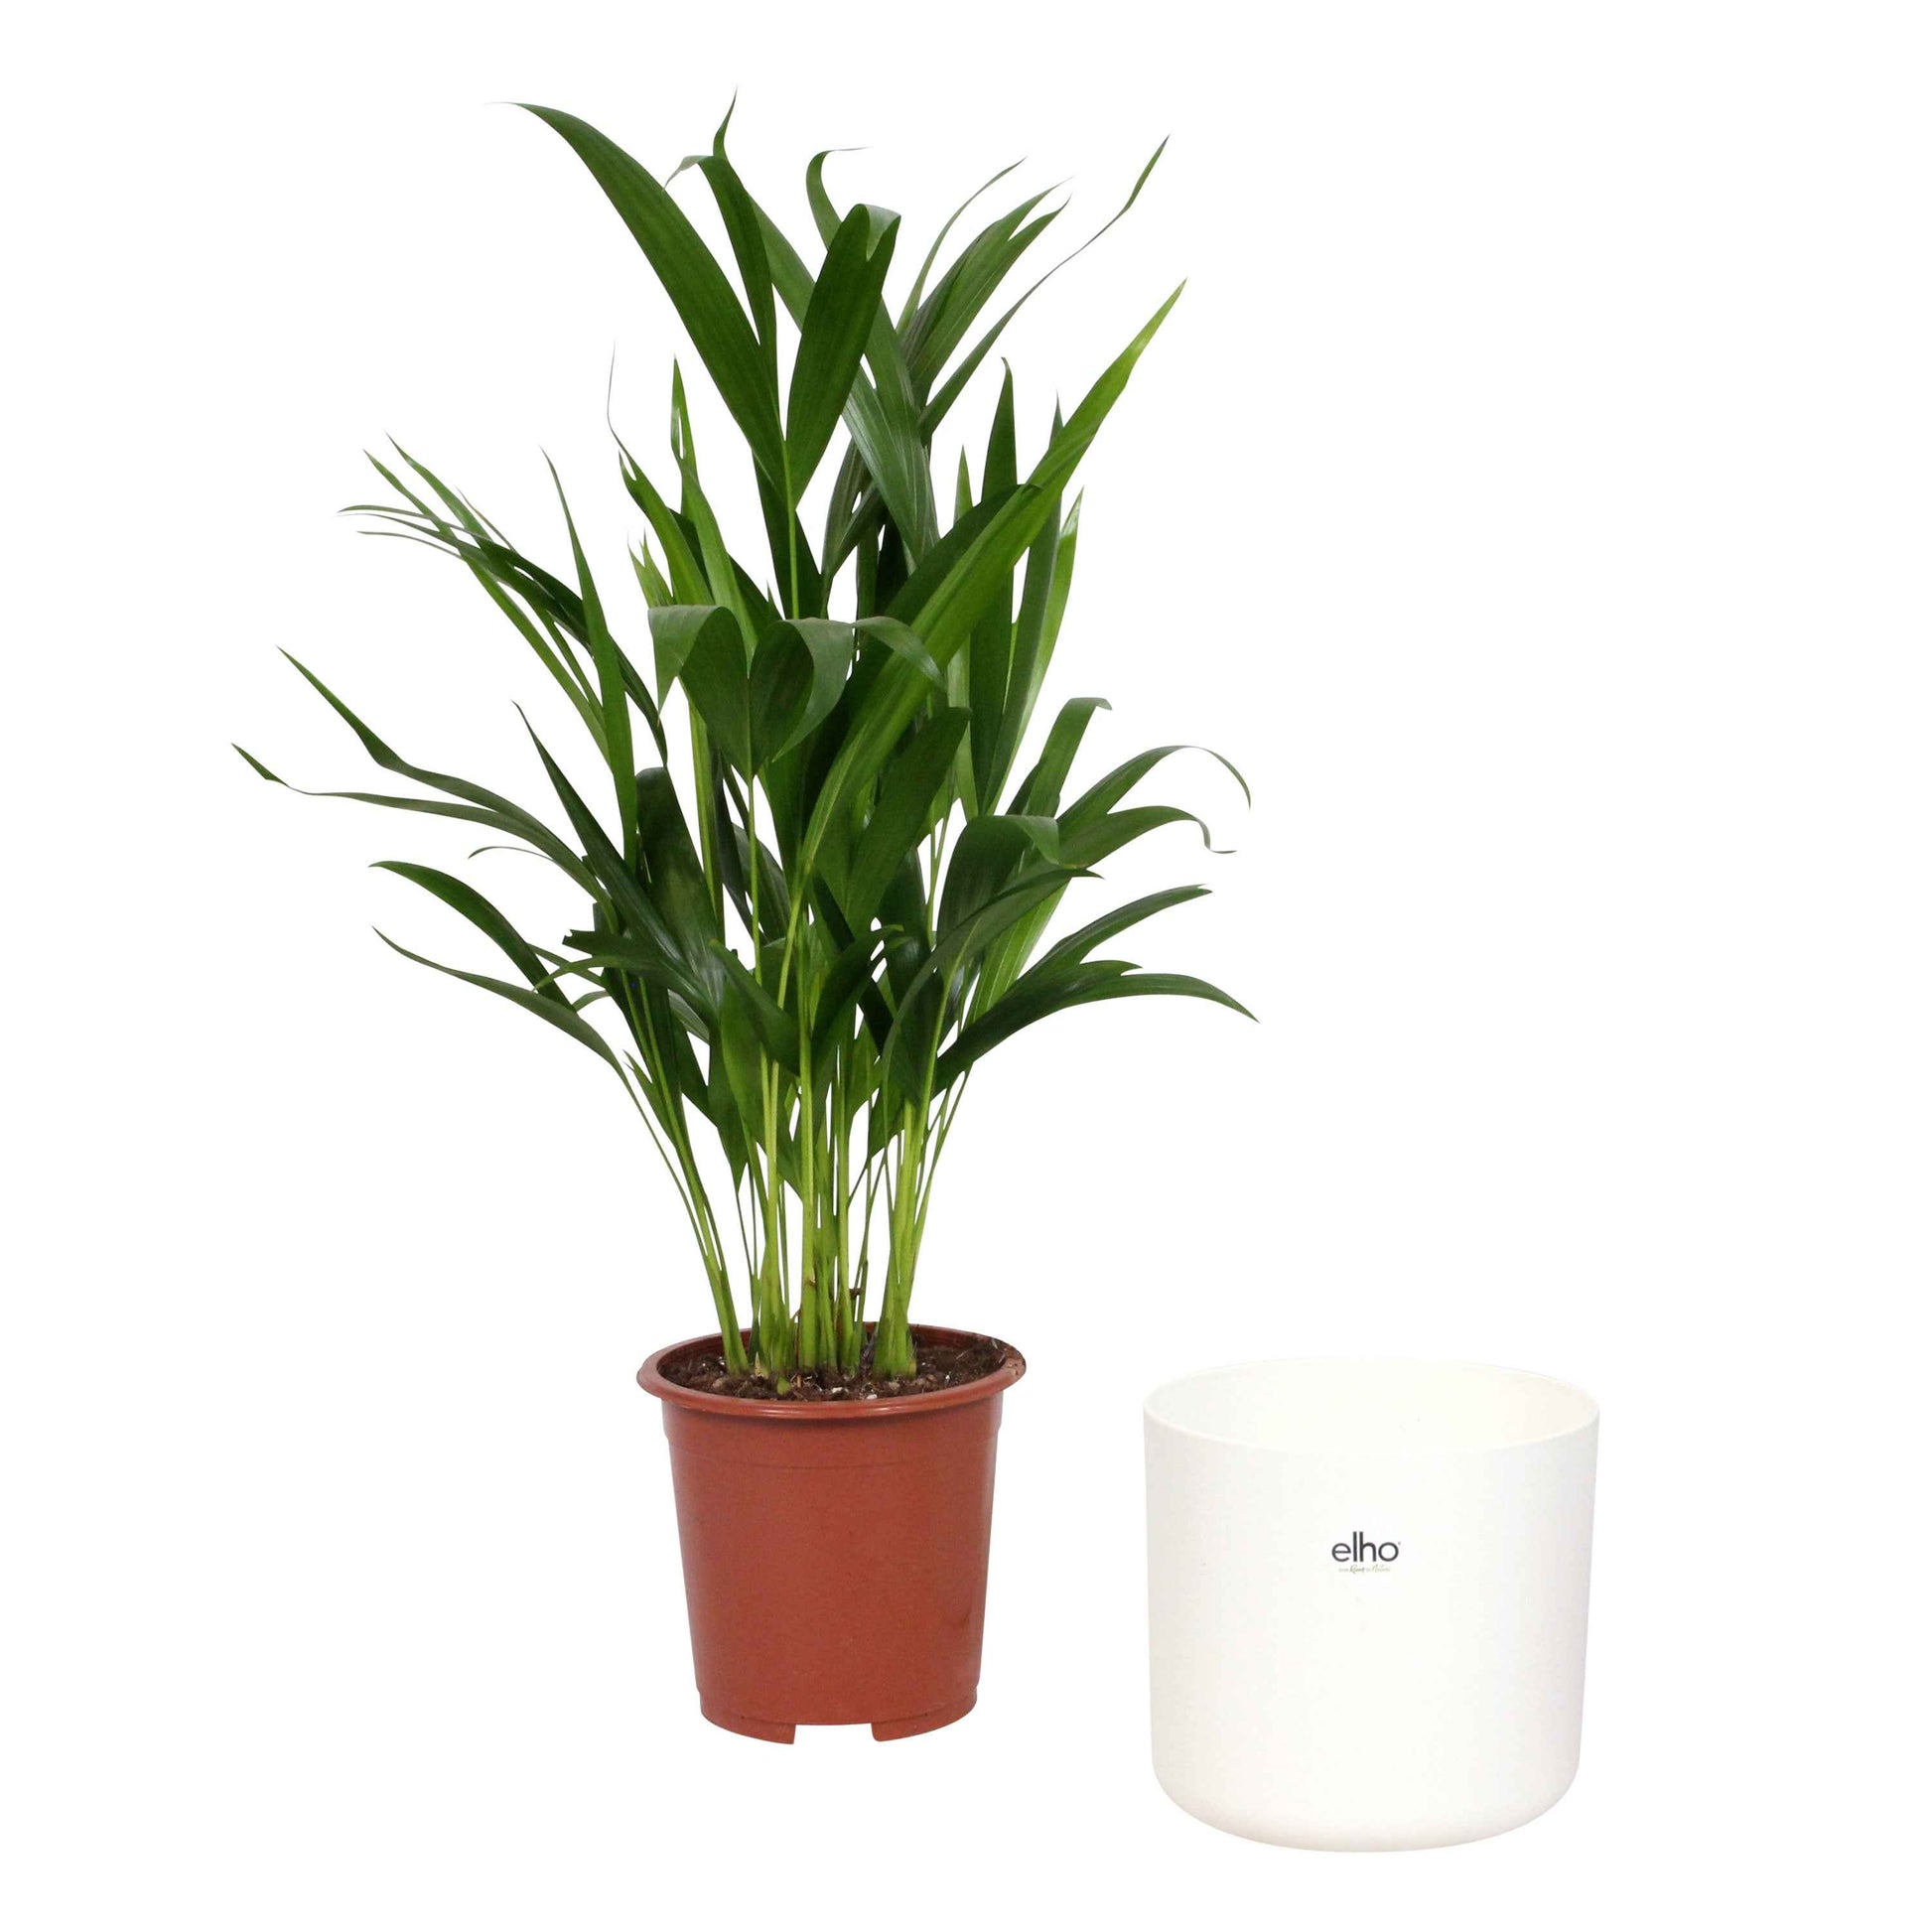 Palmier Aréca Dypsis lutescens avec pot décoratif - Palmier avec cache-pot